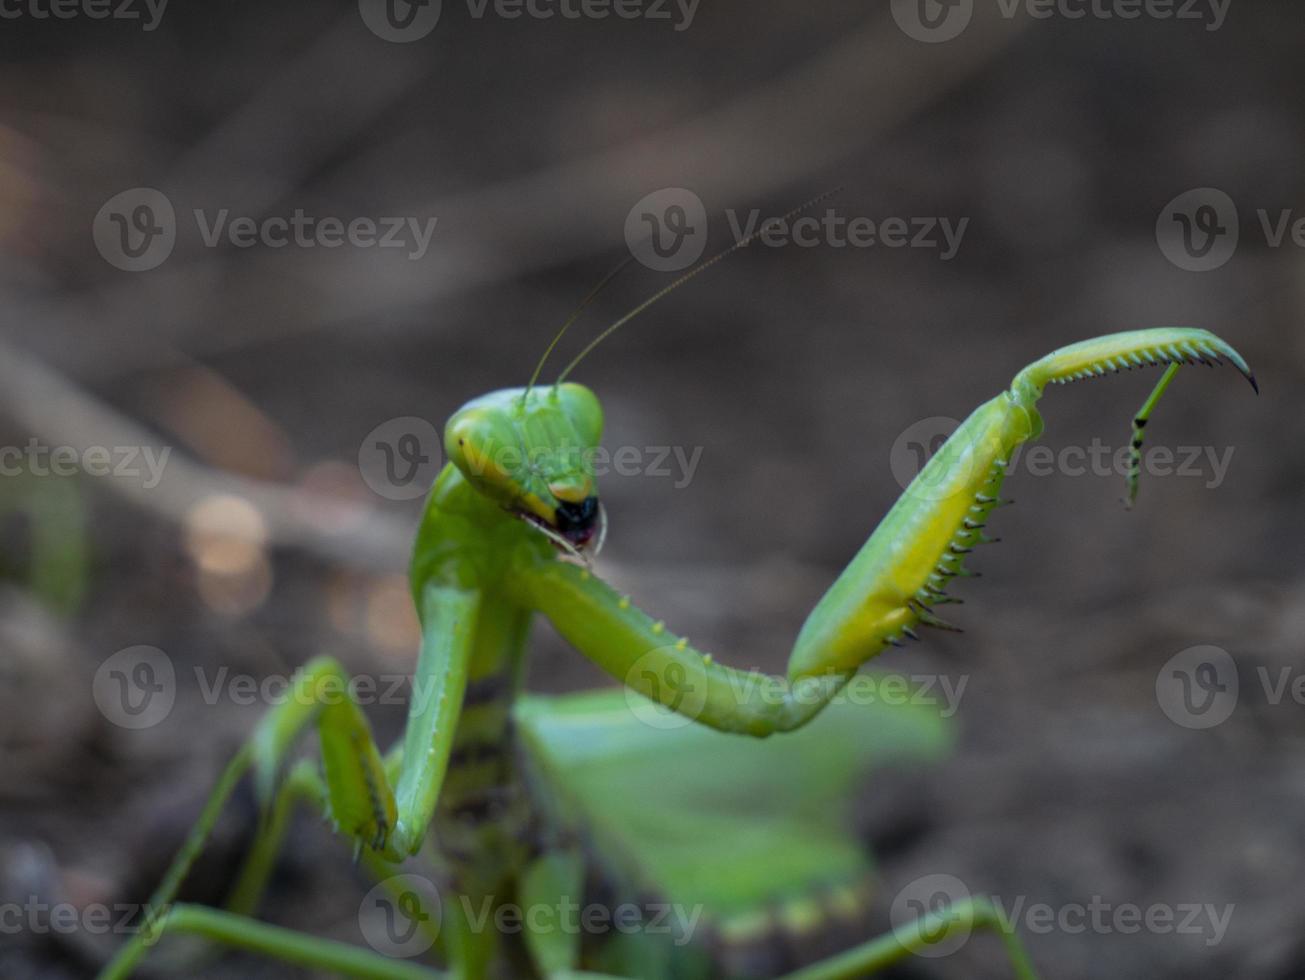 mantis em uma pose de ataque no habitat foto